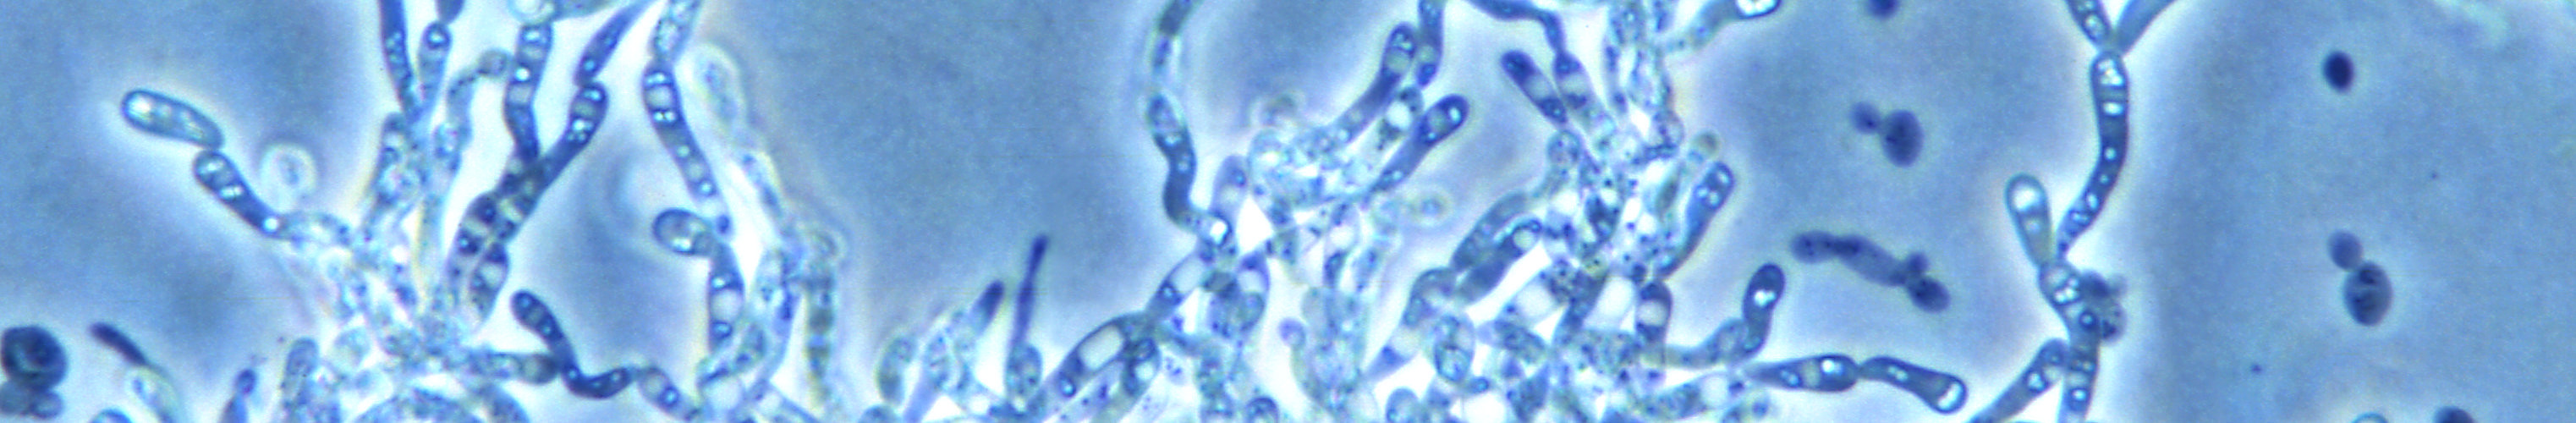 Saccharomyces filamentous pseudohyphae